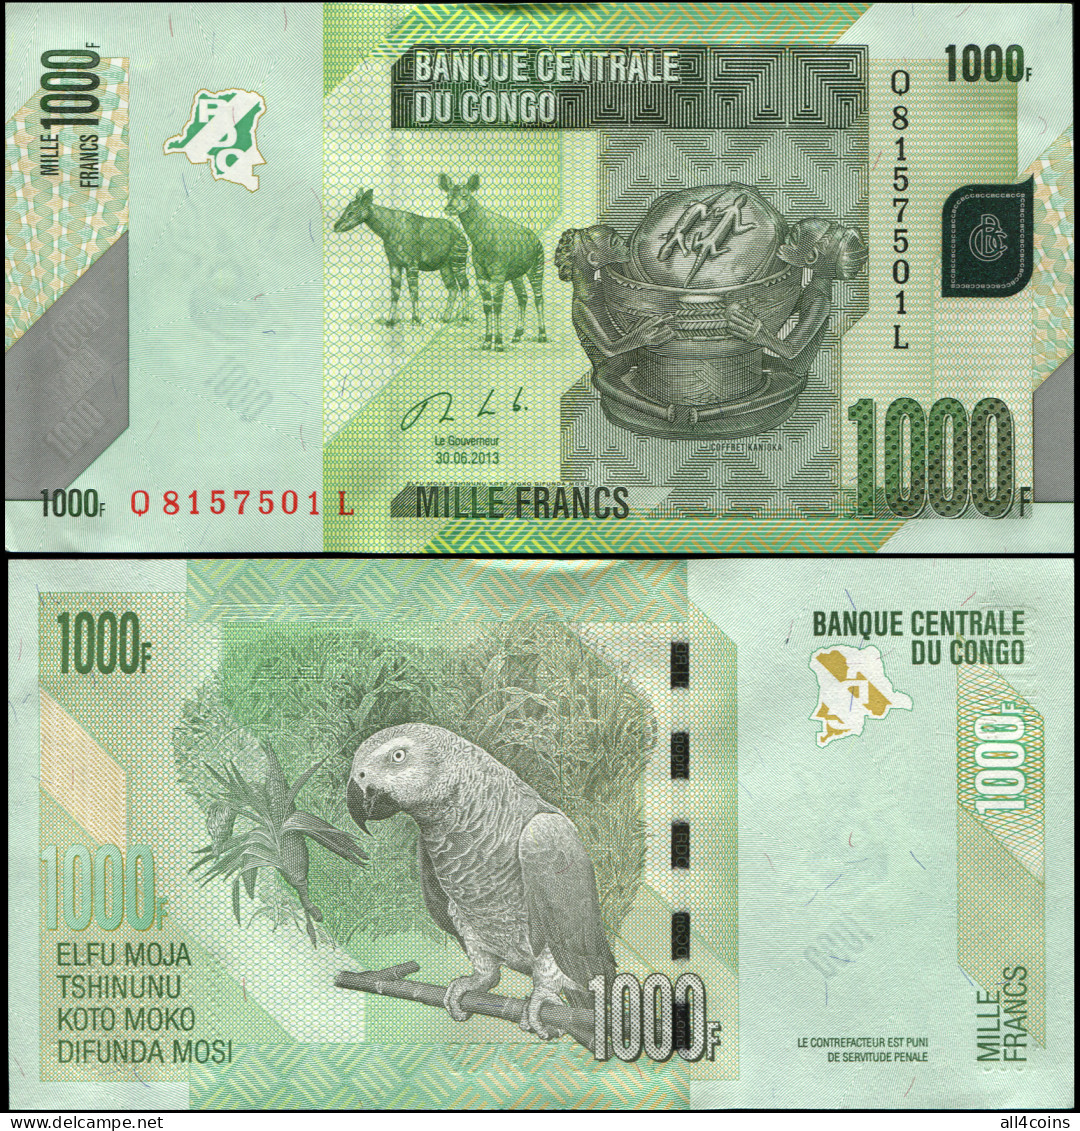 DR Congo 1000 Francs. 30.06.2013 Unc. Banknote Cat# P.101b - Democratische Republiek Congo & Zaire